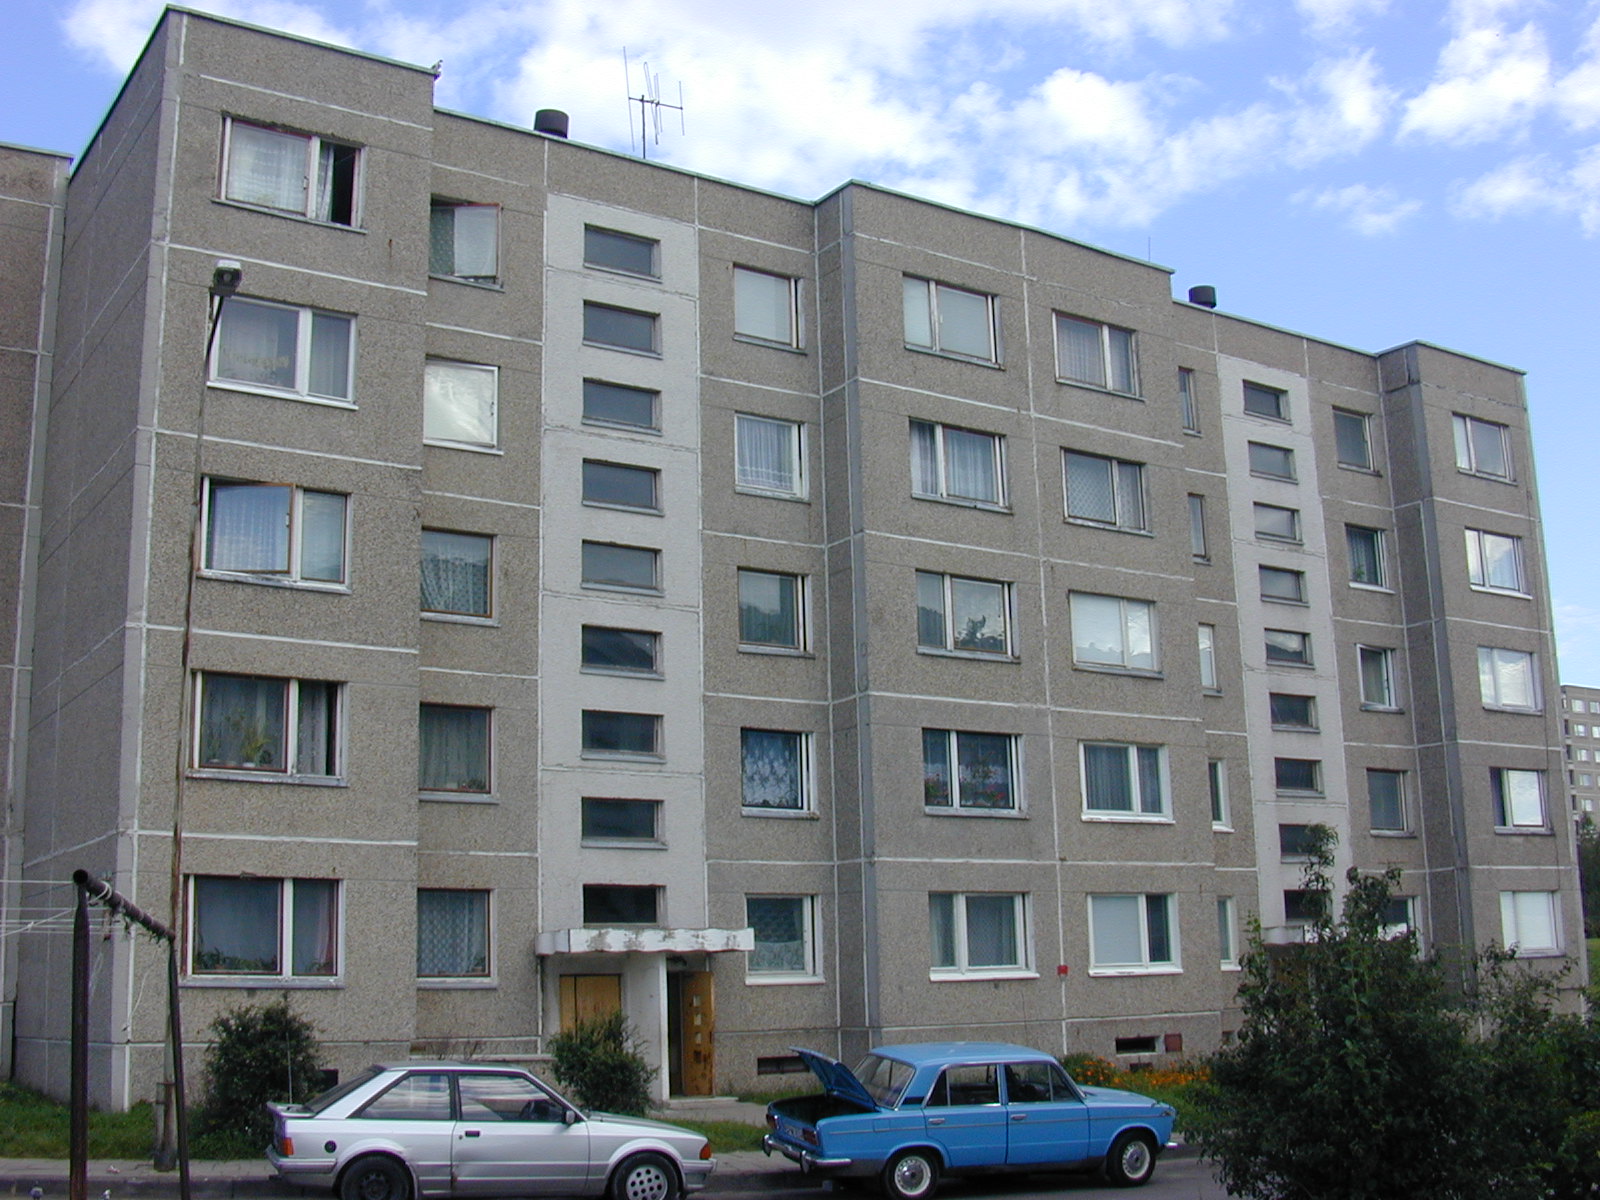 Rygos g. 40, Vilnius